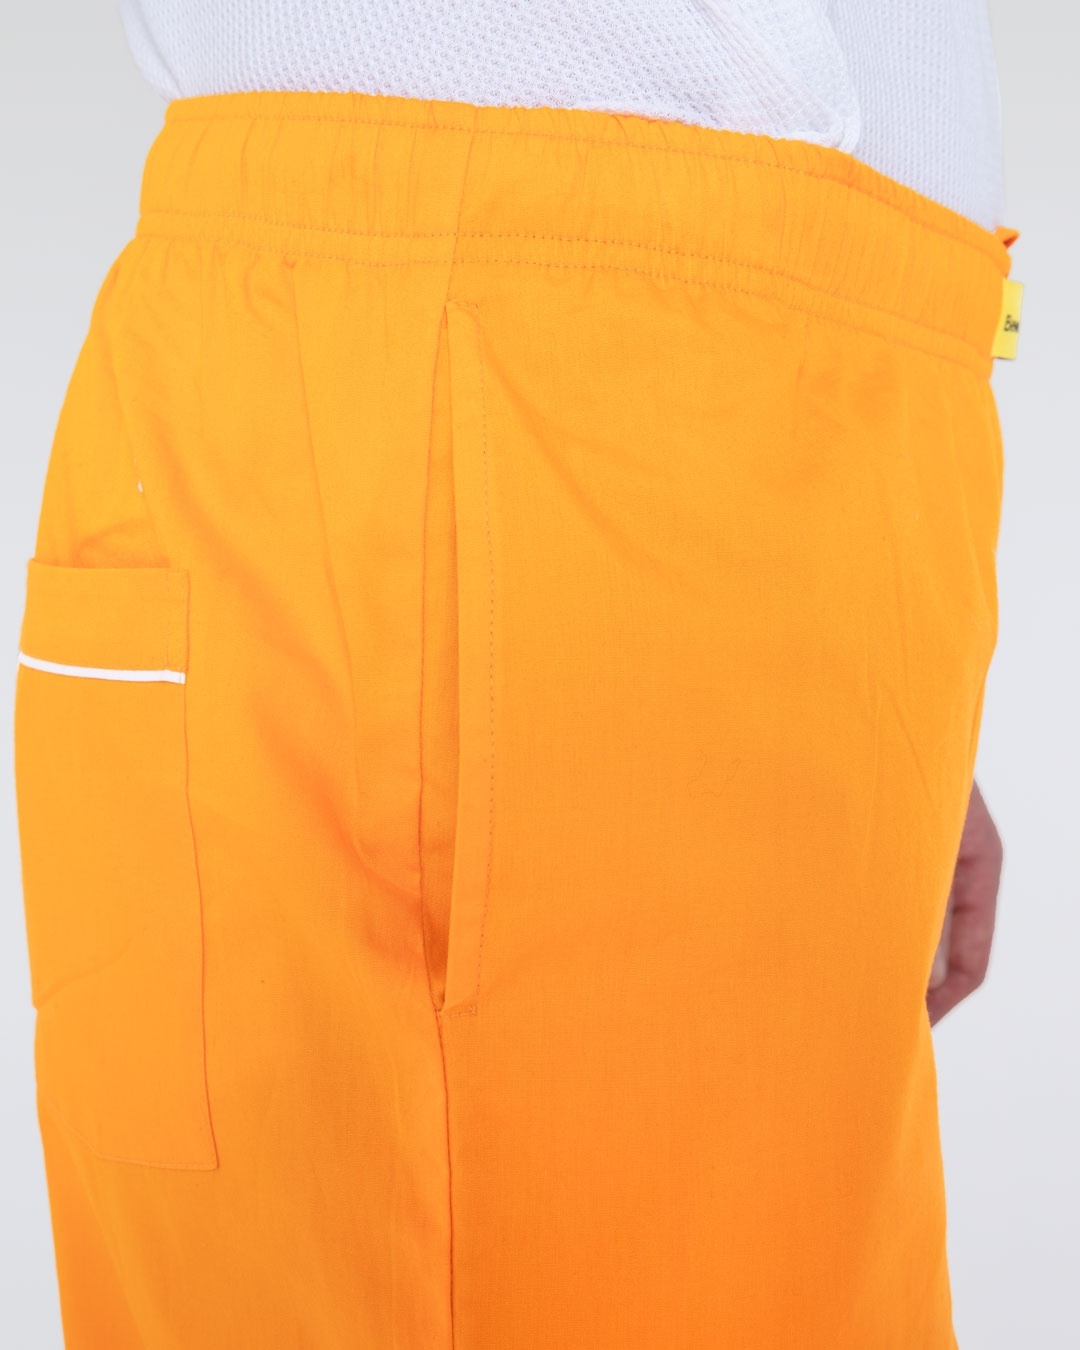 Buy Men's Orange Pyjamas Online in India at Bewakoof